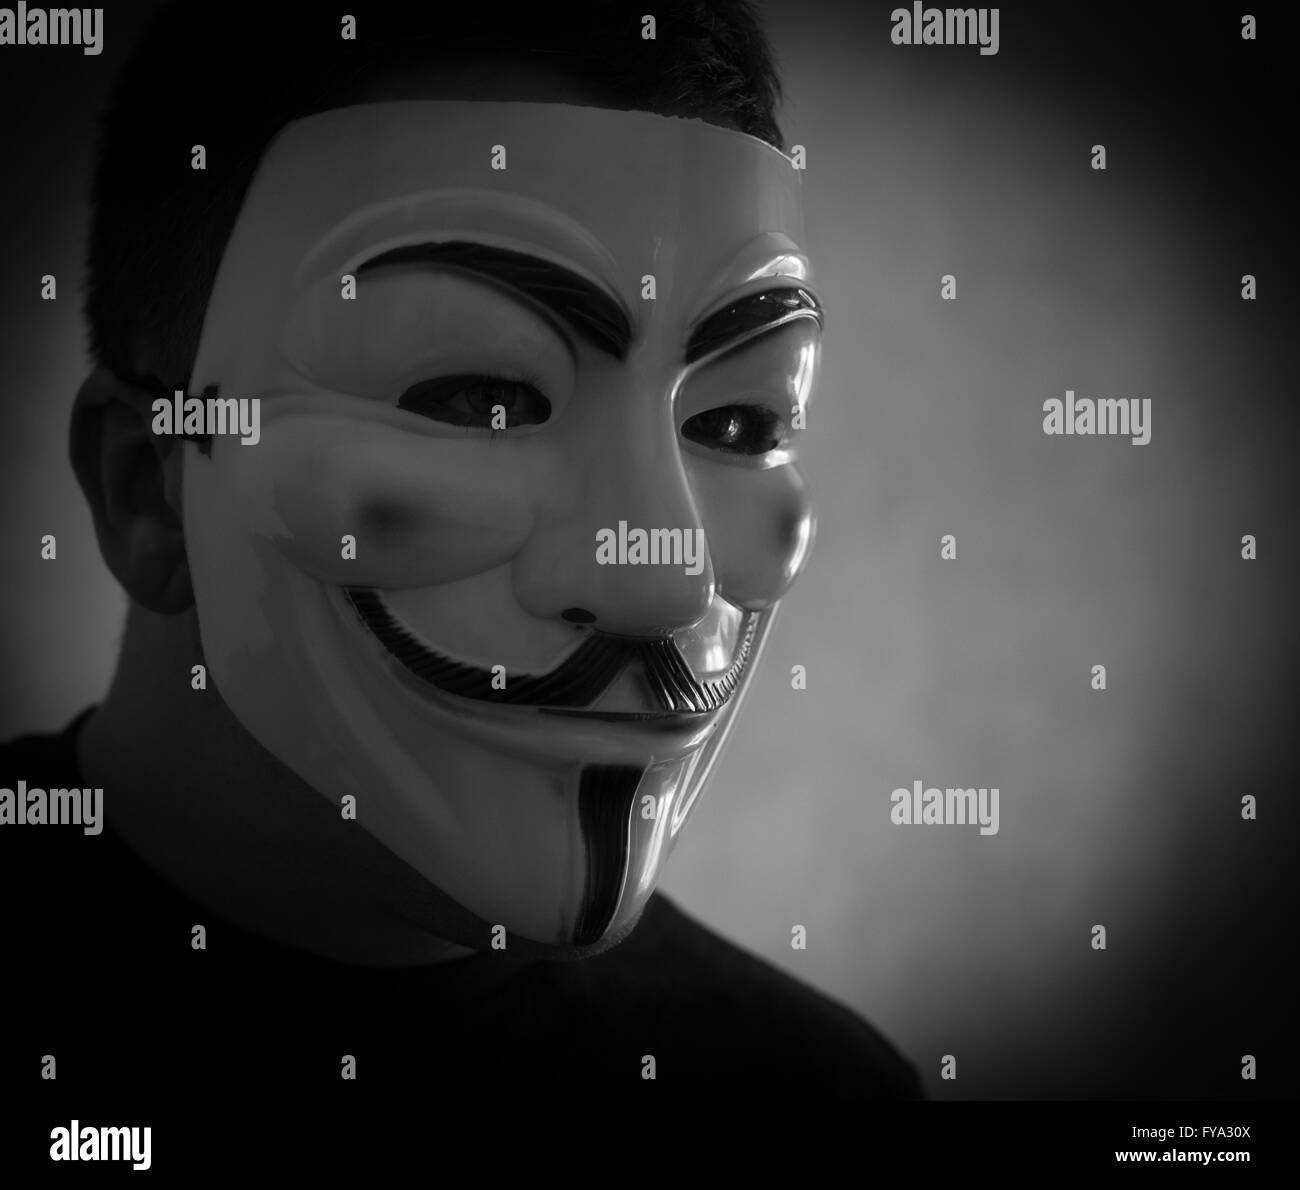 El hombre lleva una máscara de Guy Fawkes popular con el anonimato para disfrazar su identidad Foto de stock